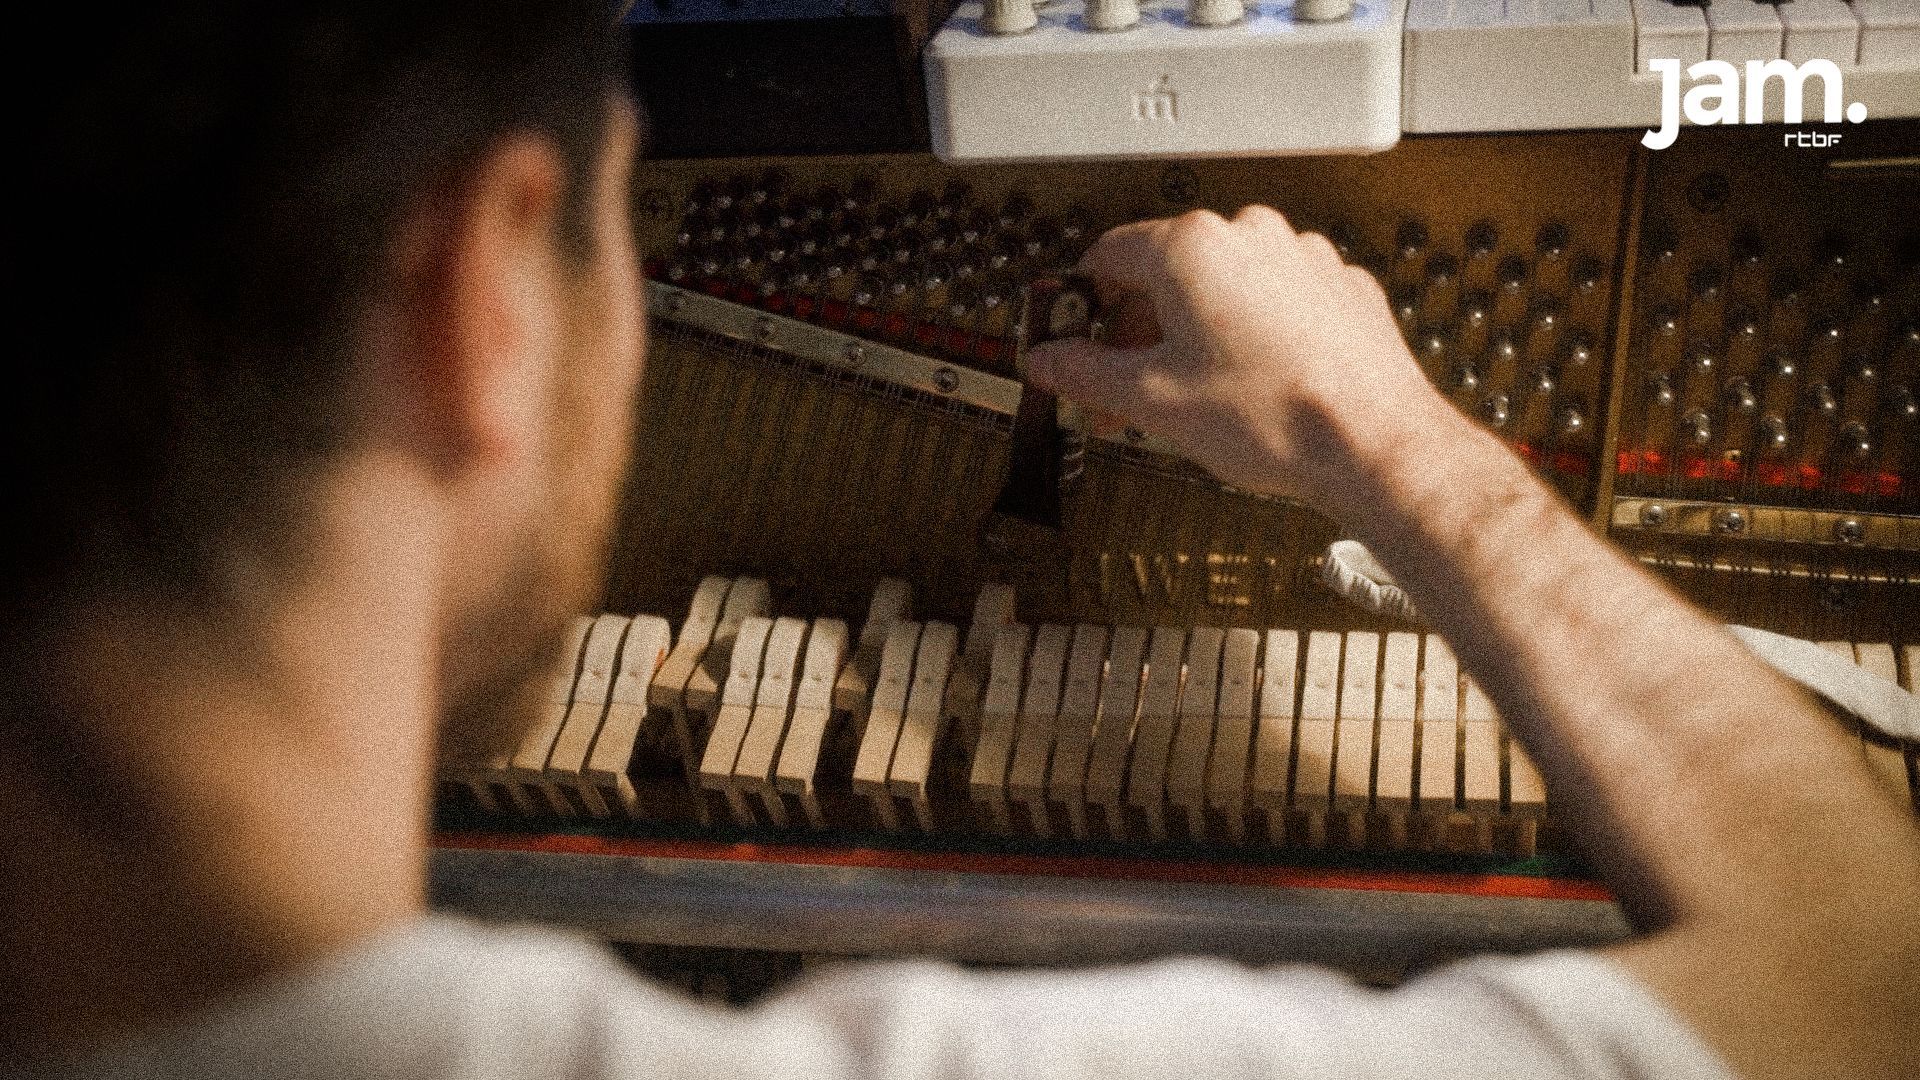 Le décapsuleur, une autre manière de détourner le son du piano traditionnel.